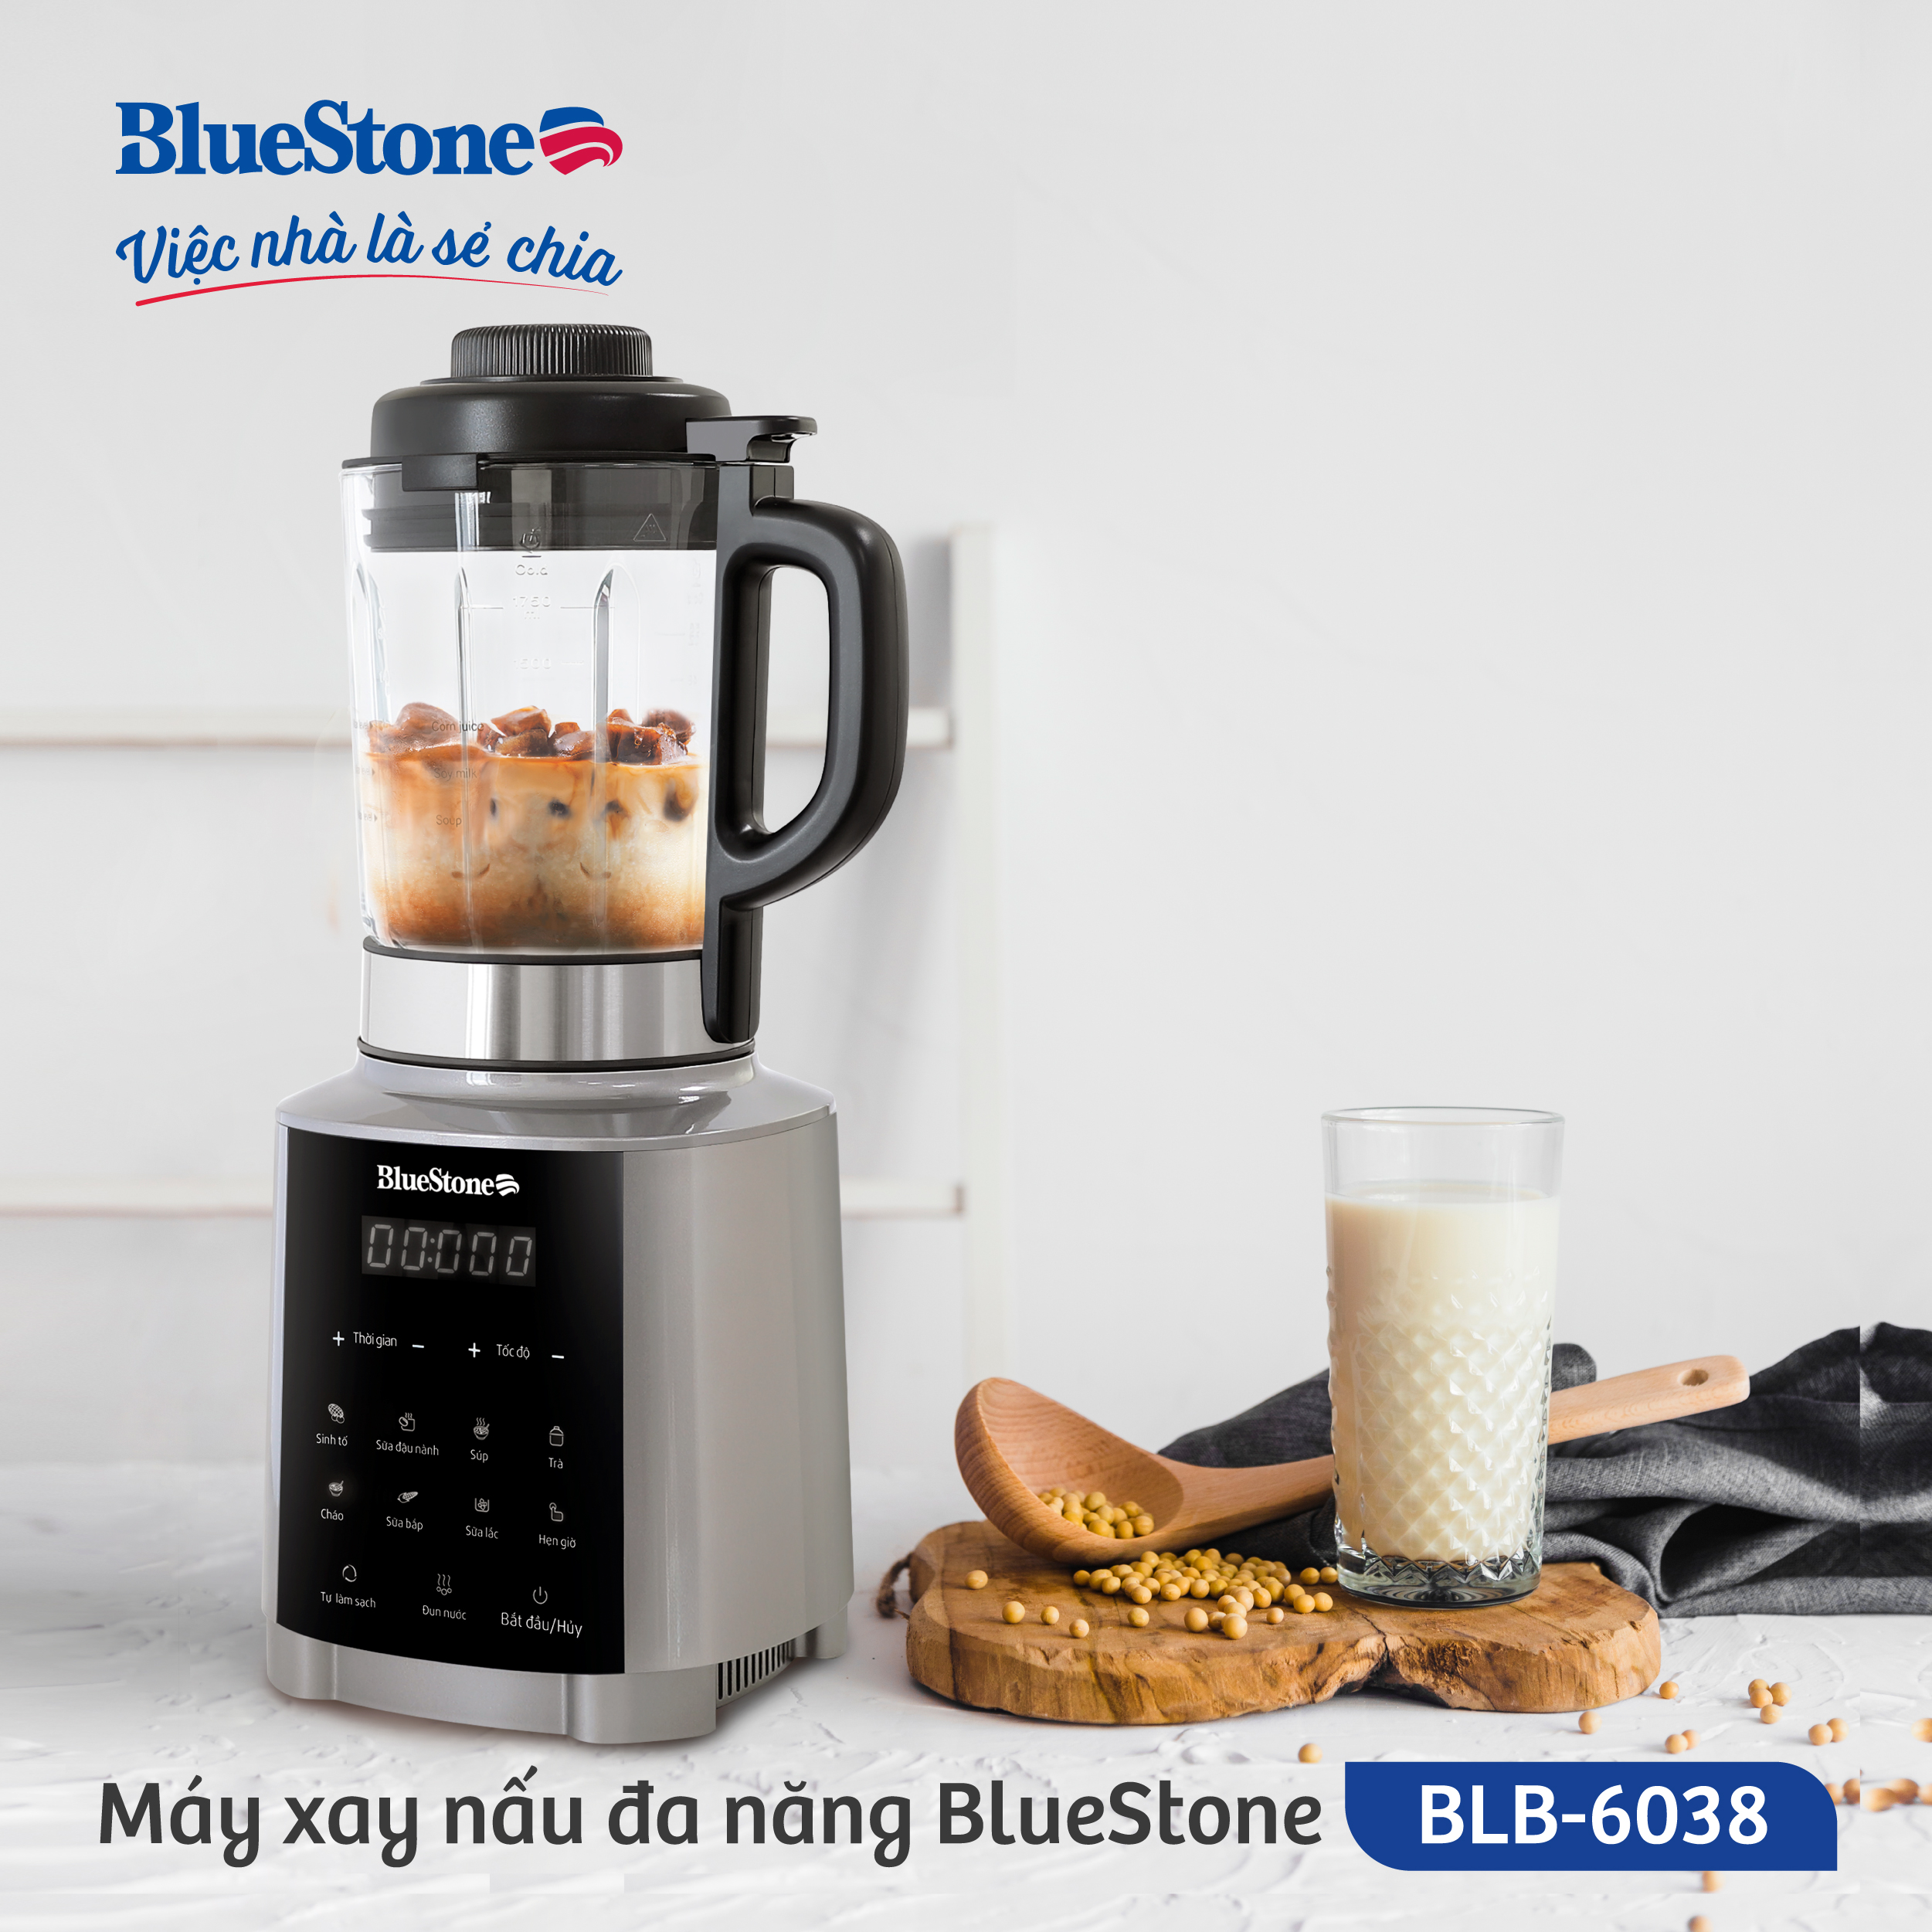 May xay nau đa nang BlueStone BLB 6038